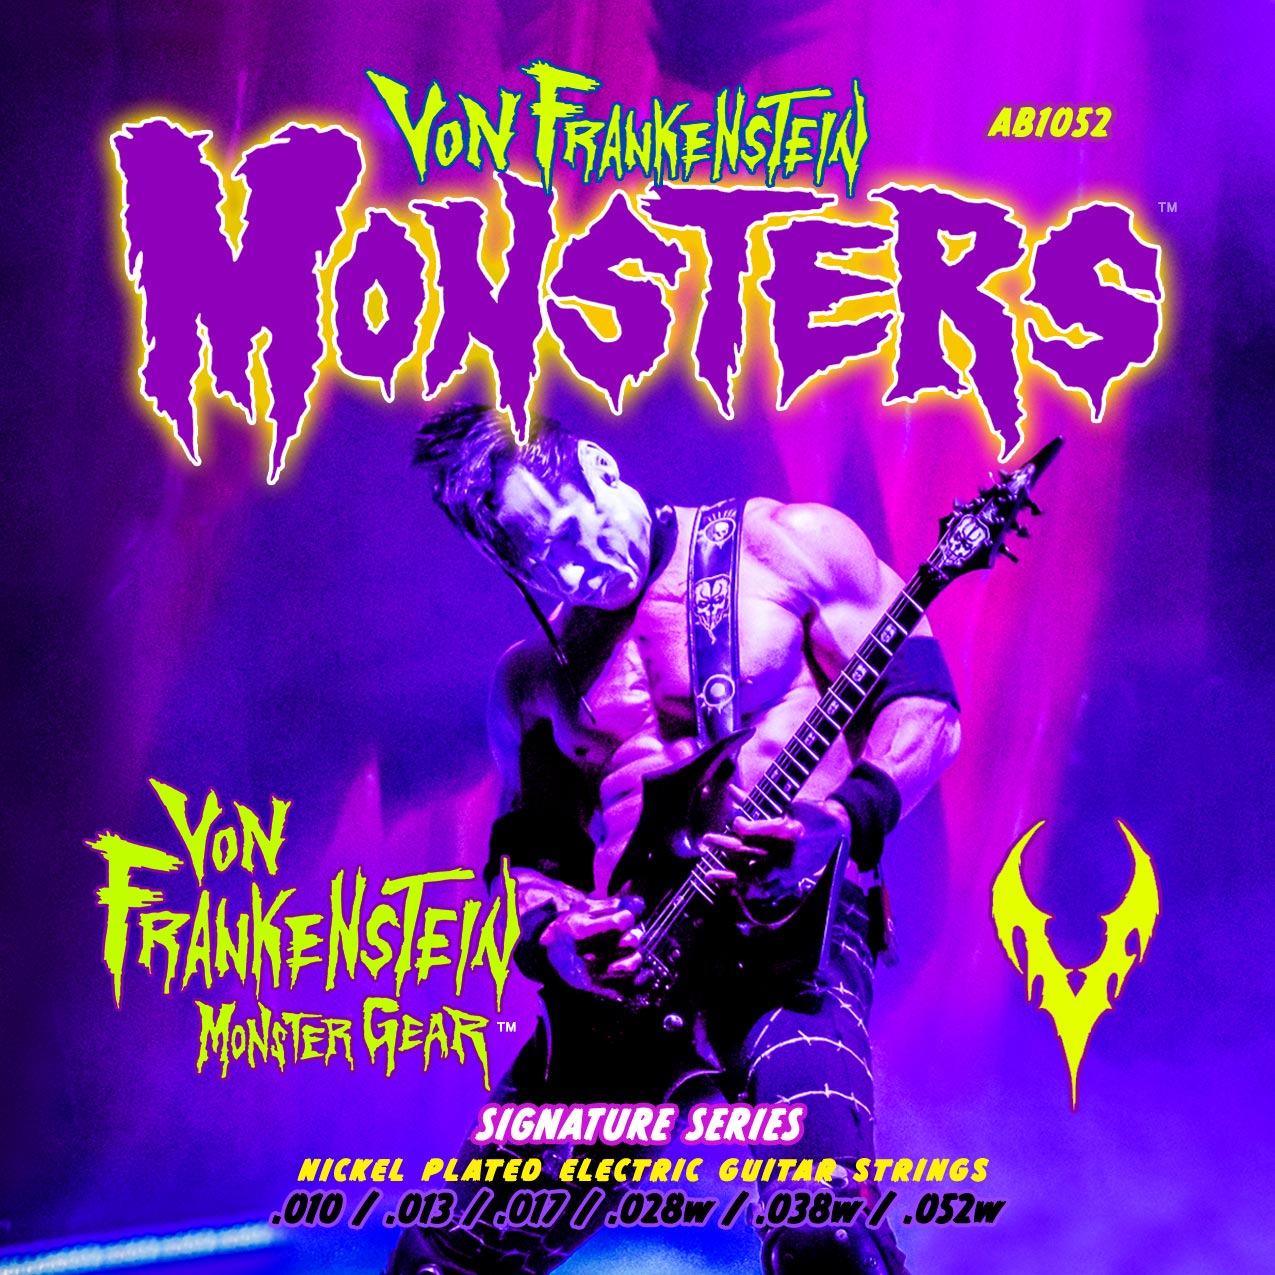 Doyle Wolfgang Launches Von Frankenstein Monster Gear